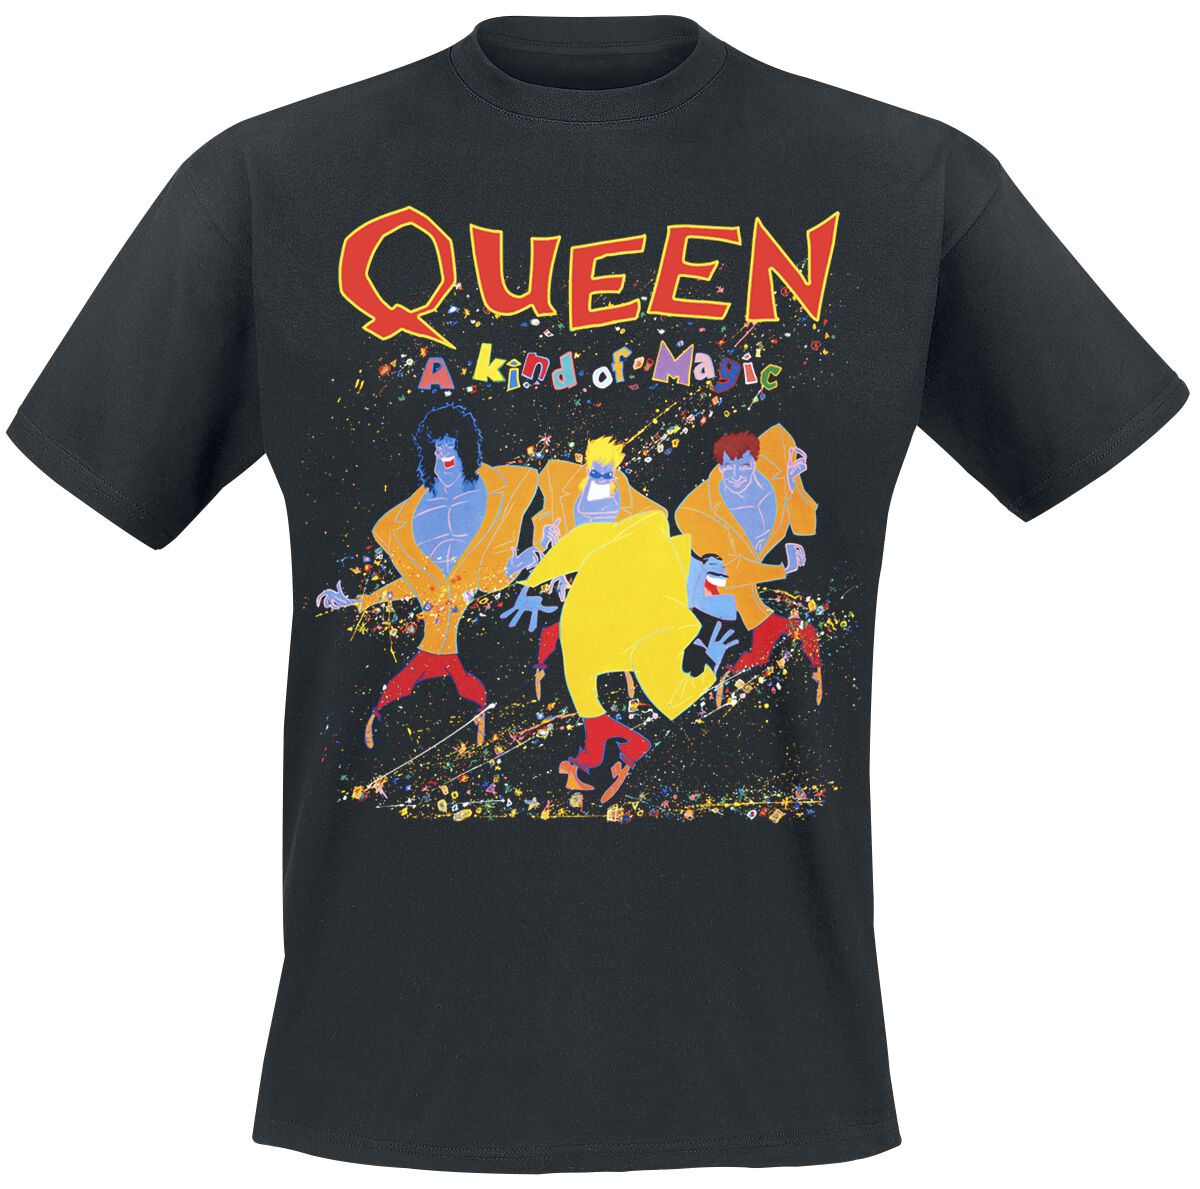 Queen T-Shirt - A Kind Of Magic - S bis 5XL - für Männer - Größe 4XL - schwarz  - Lizenziertes Merchandise!